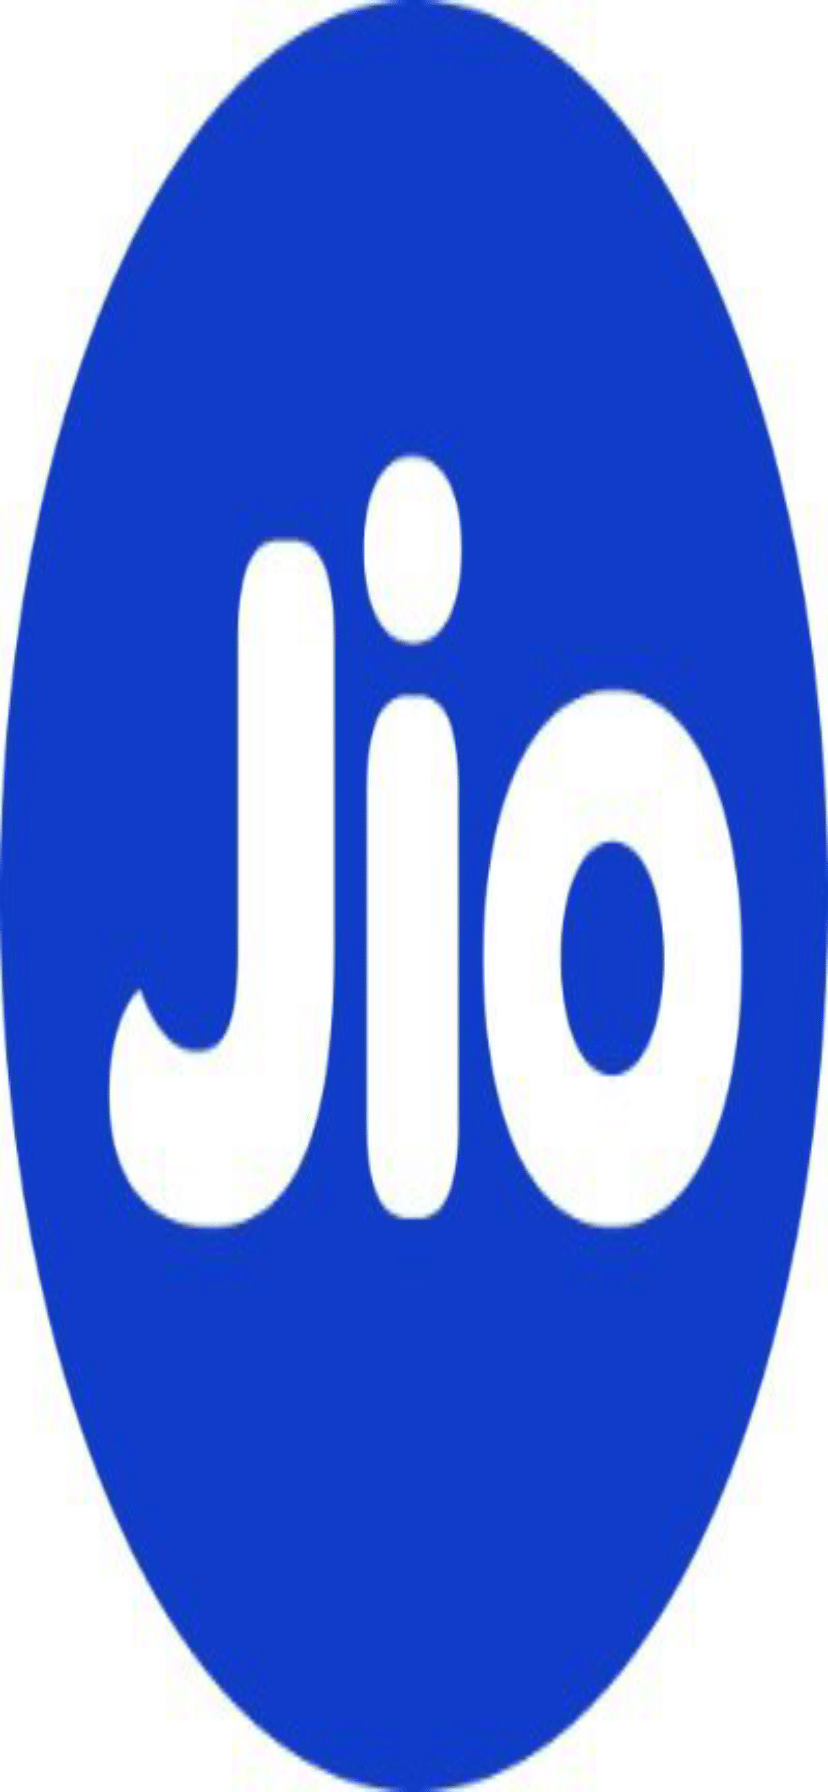 jio logo - PNGBUY